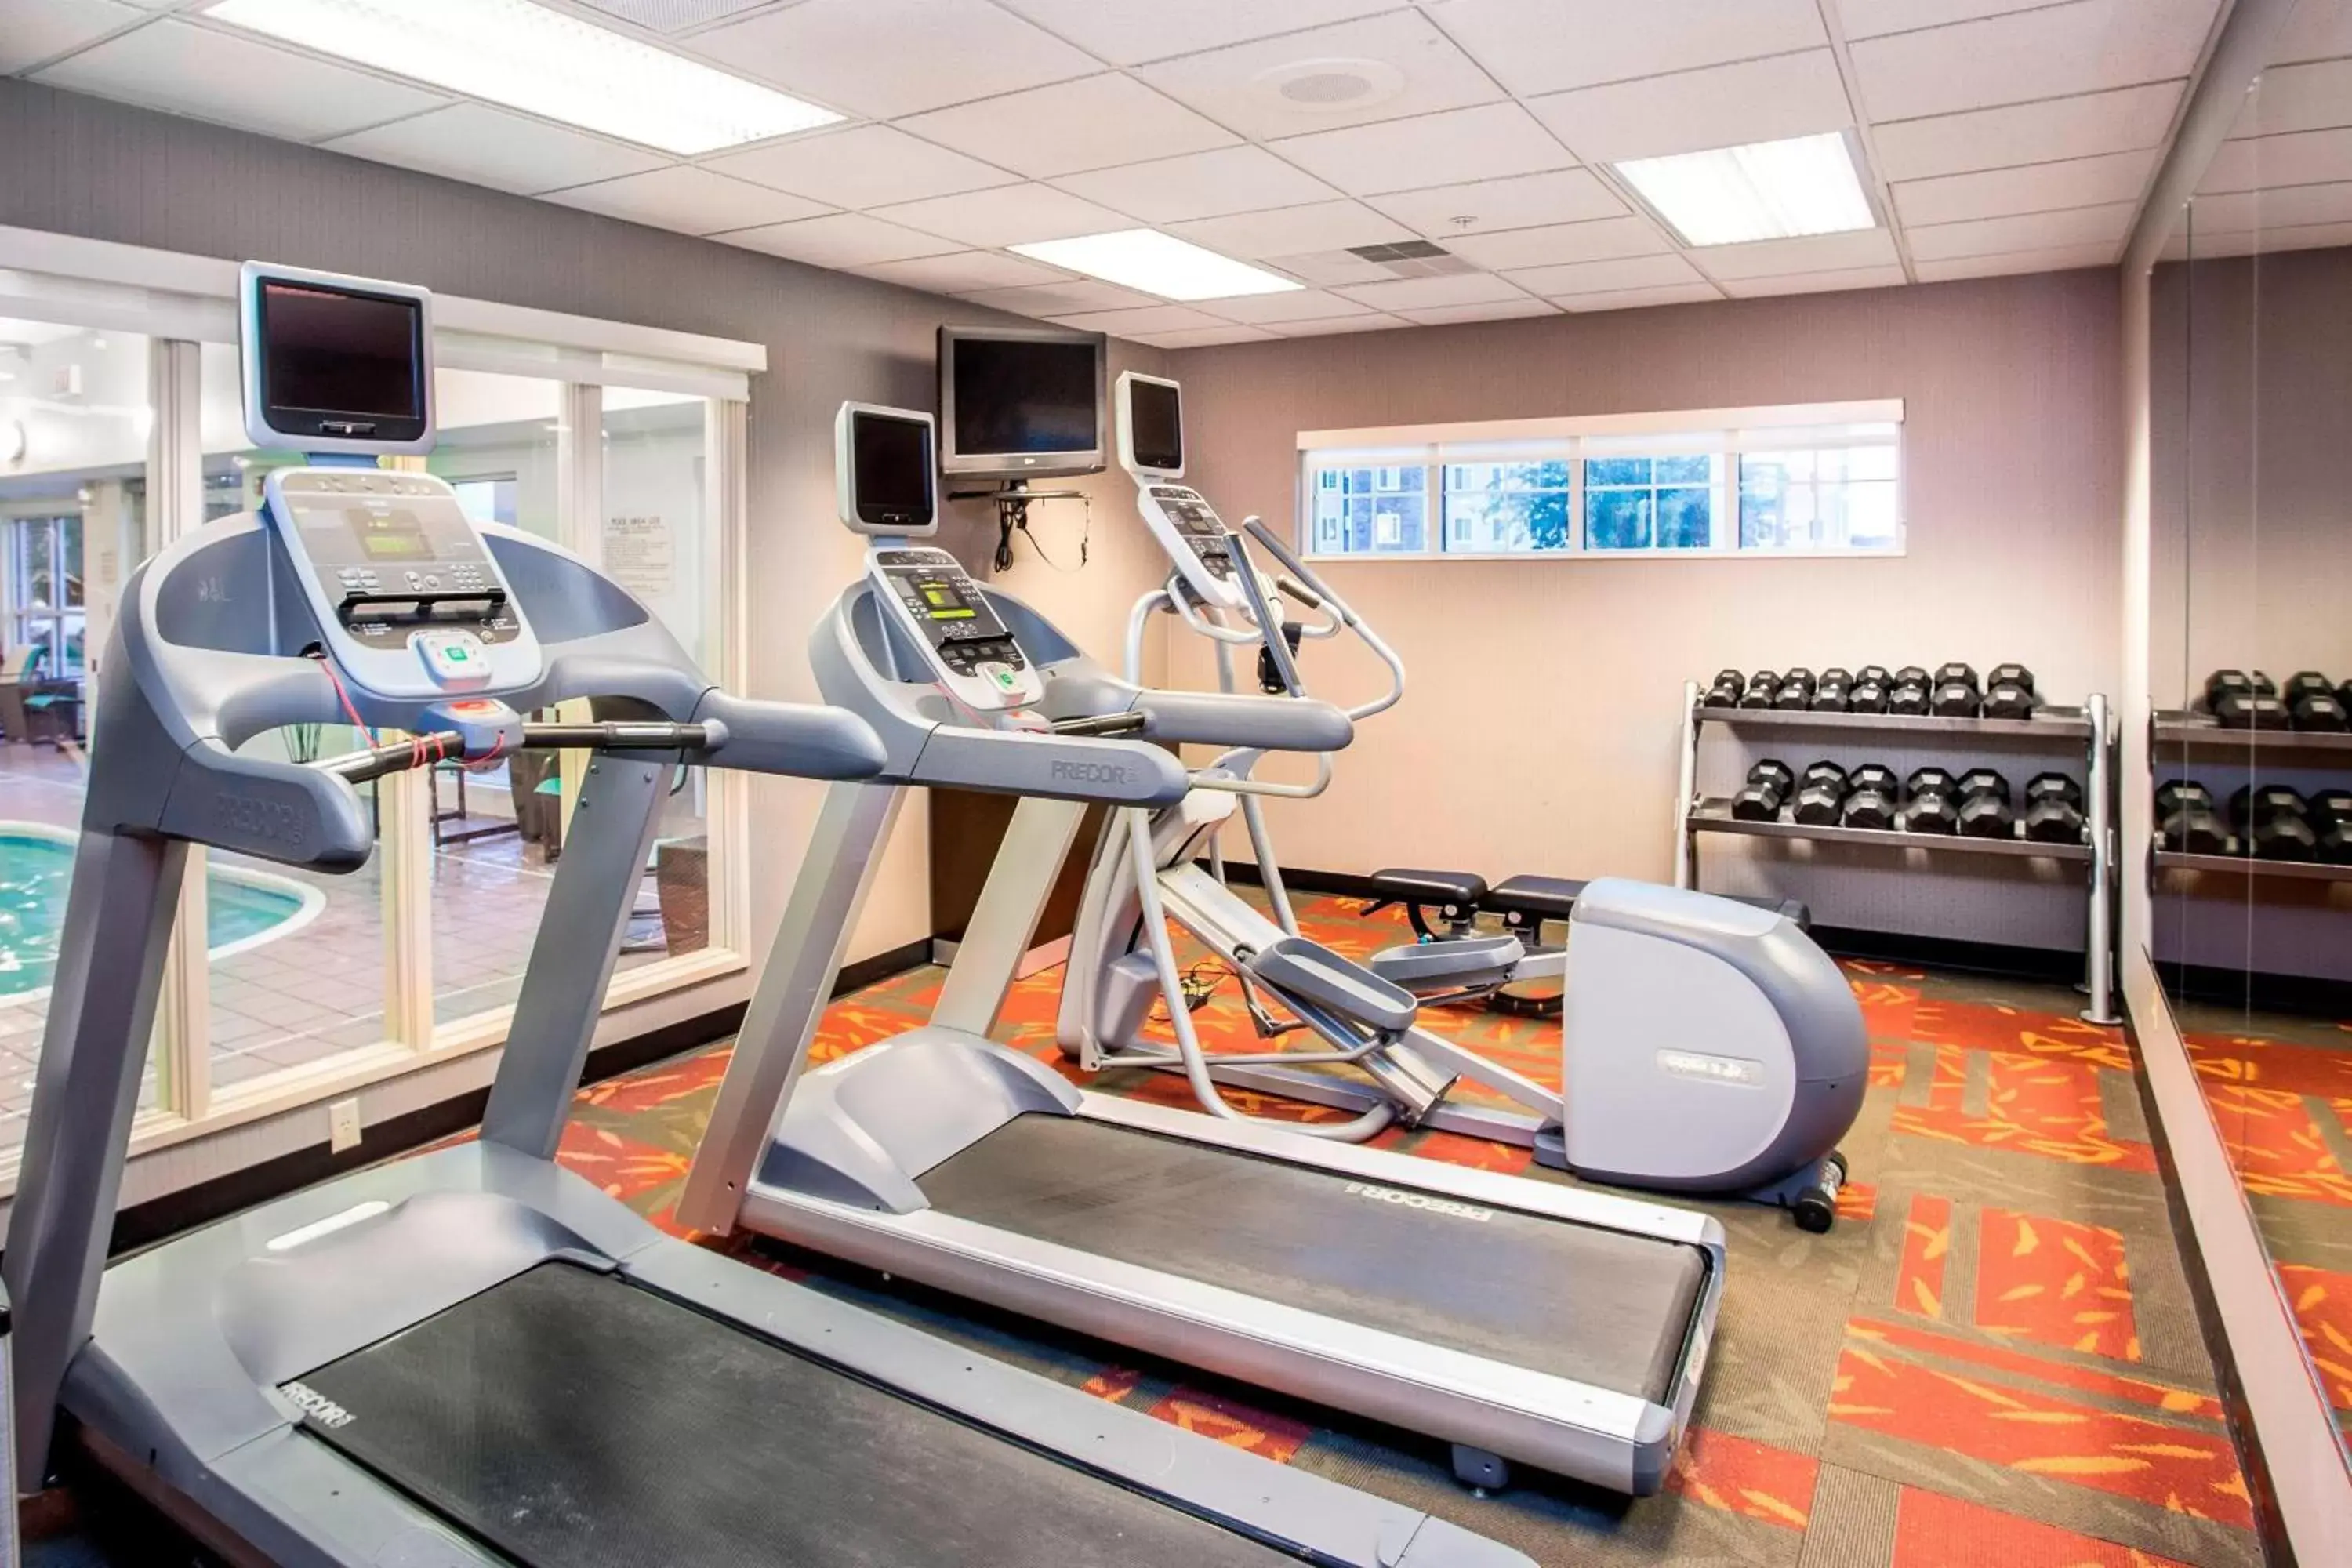 Fitness centre/facilities, Fitness Center/Facilities in Residence Inn Rockford